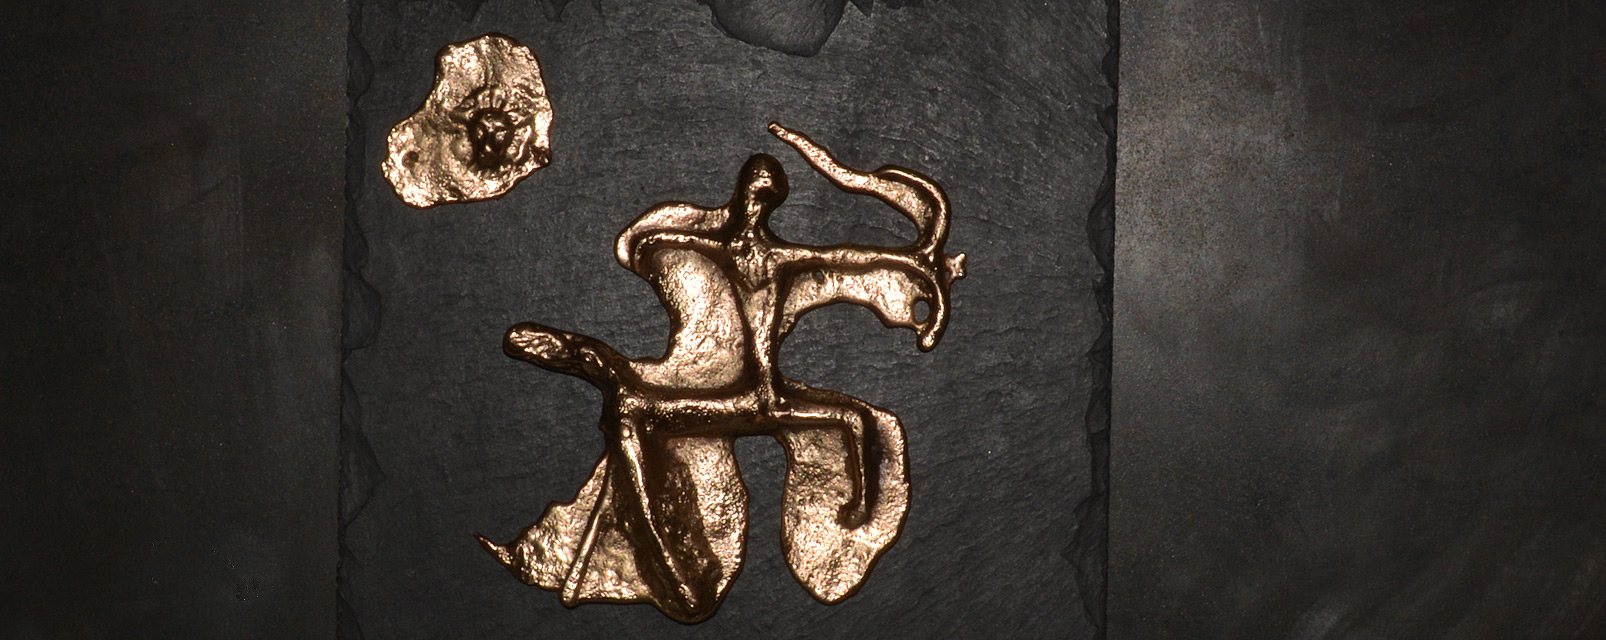 Le Centaure - tableau de bronze sur ardoise fixés sur plaque d'acier oxydéee